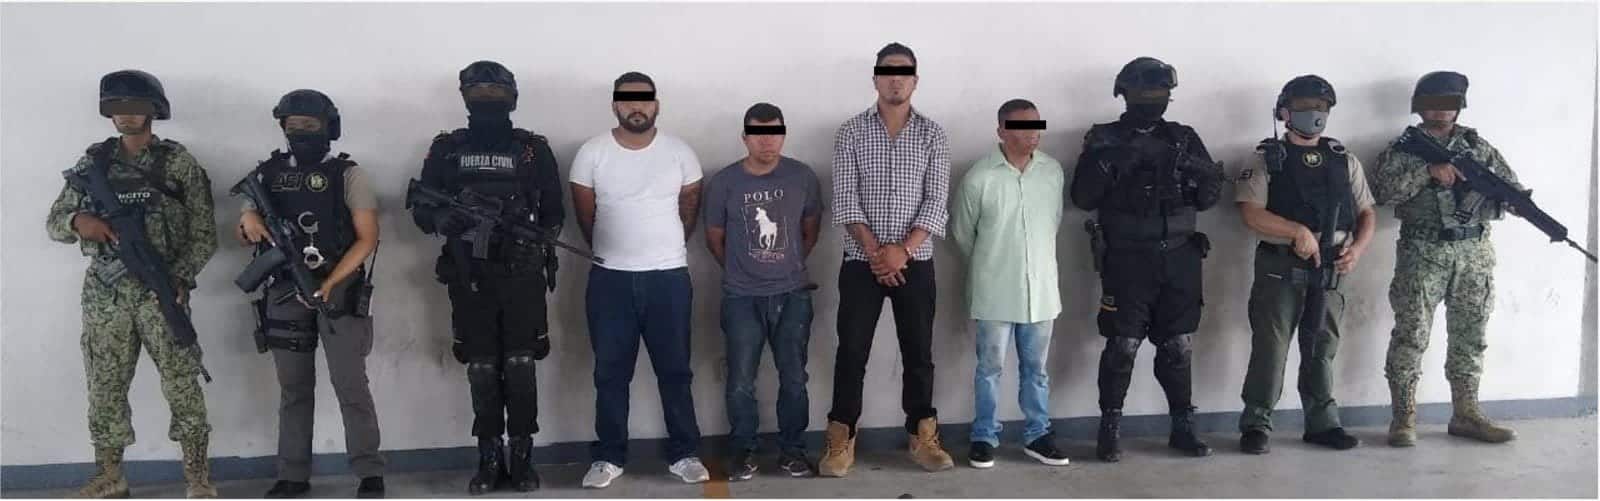 Cuatro presuntos integrantes del crimen organizado acusados de participar en ejecuciones, fueron detenidos mediante un operativo implementado por las fuerzas federales, estatales y ministeriales, en Monterrey.